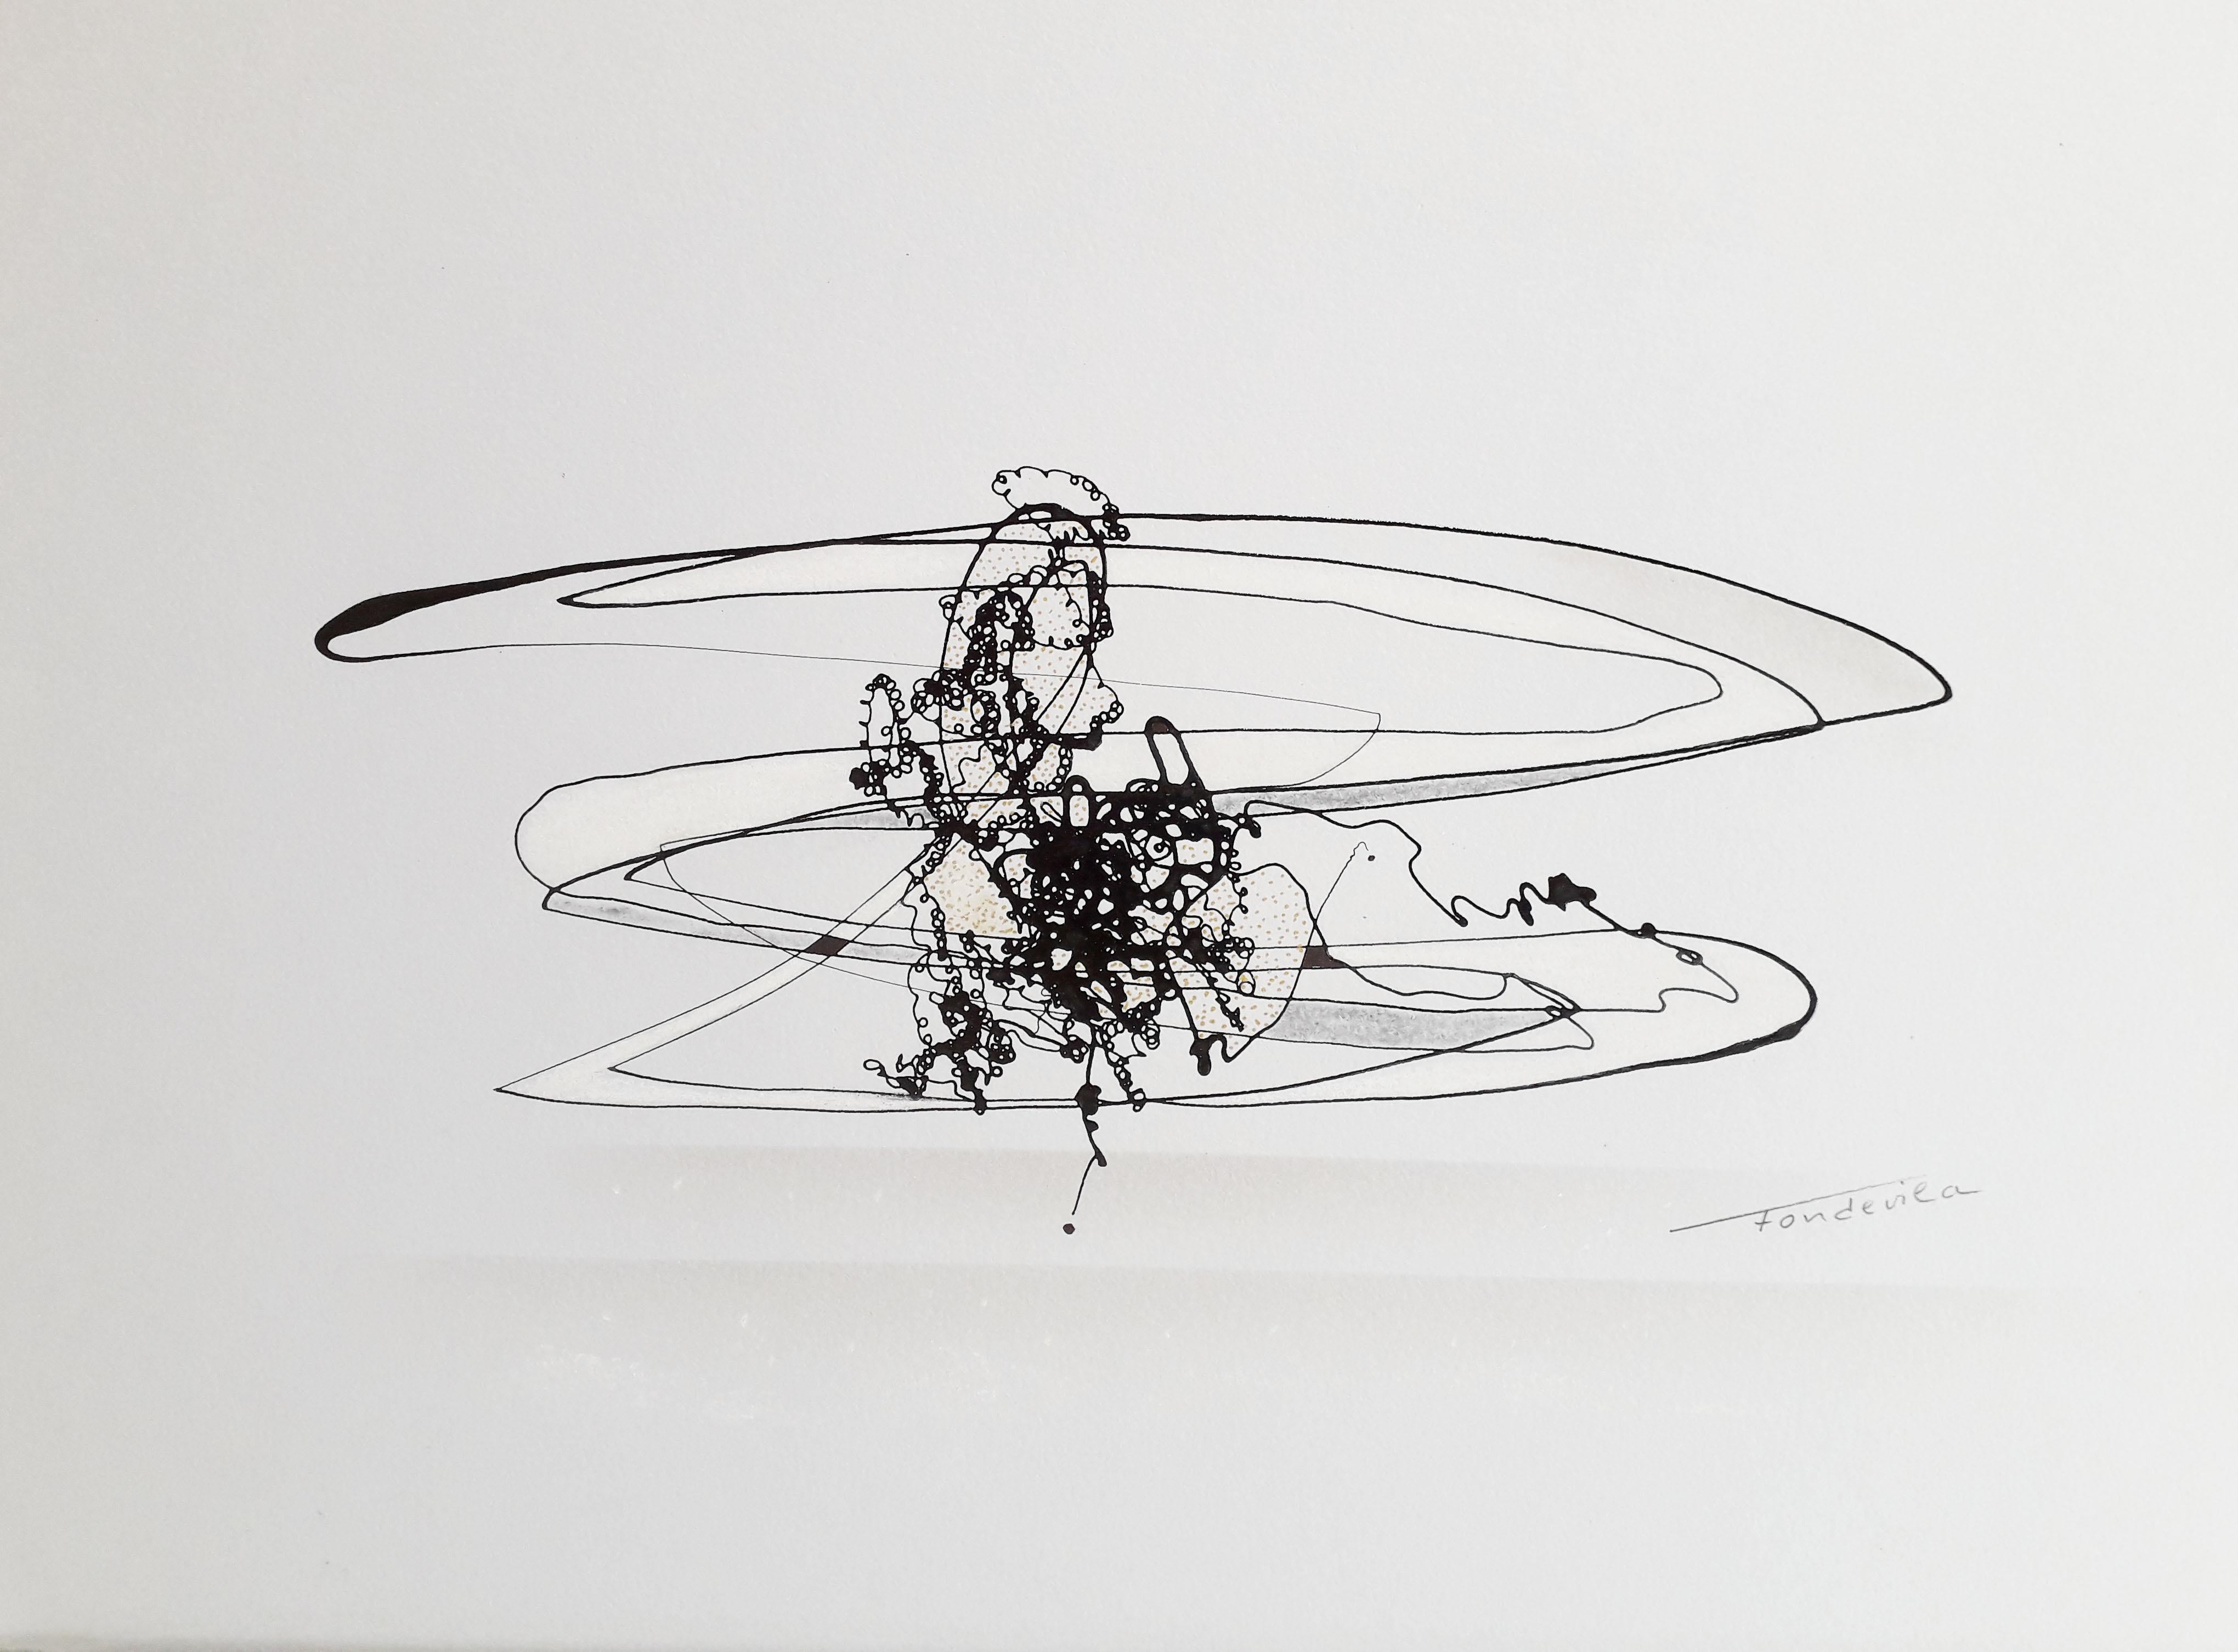 José Antonio Fondevila Abstract Drawing - Untitled